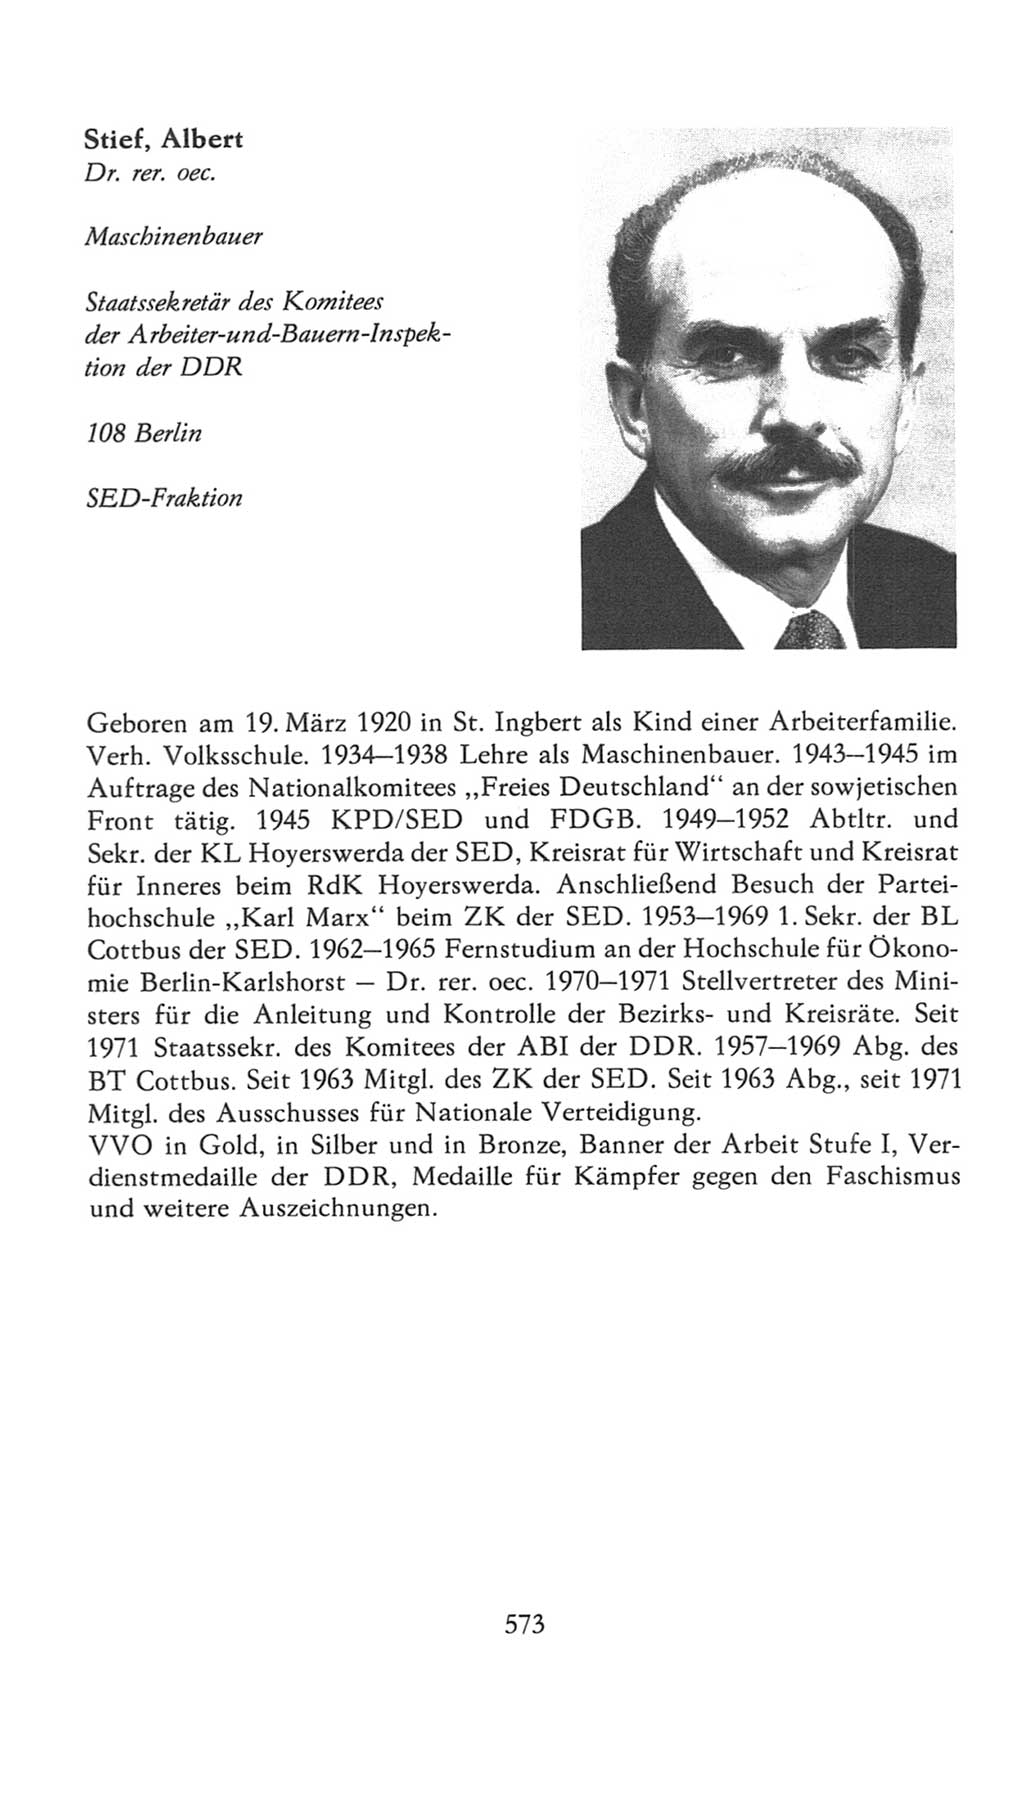 Volkskammer (VK) der Deutschen Demokratischen Republik (DDR), 7. Wahlperiode 1976-1981, Seite 573 (VK. DDR 7. WP. 1976-1981, S. 573)